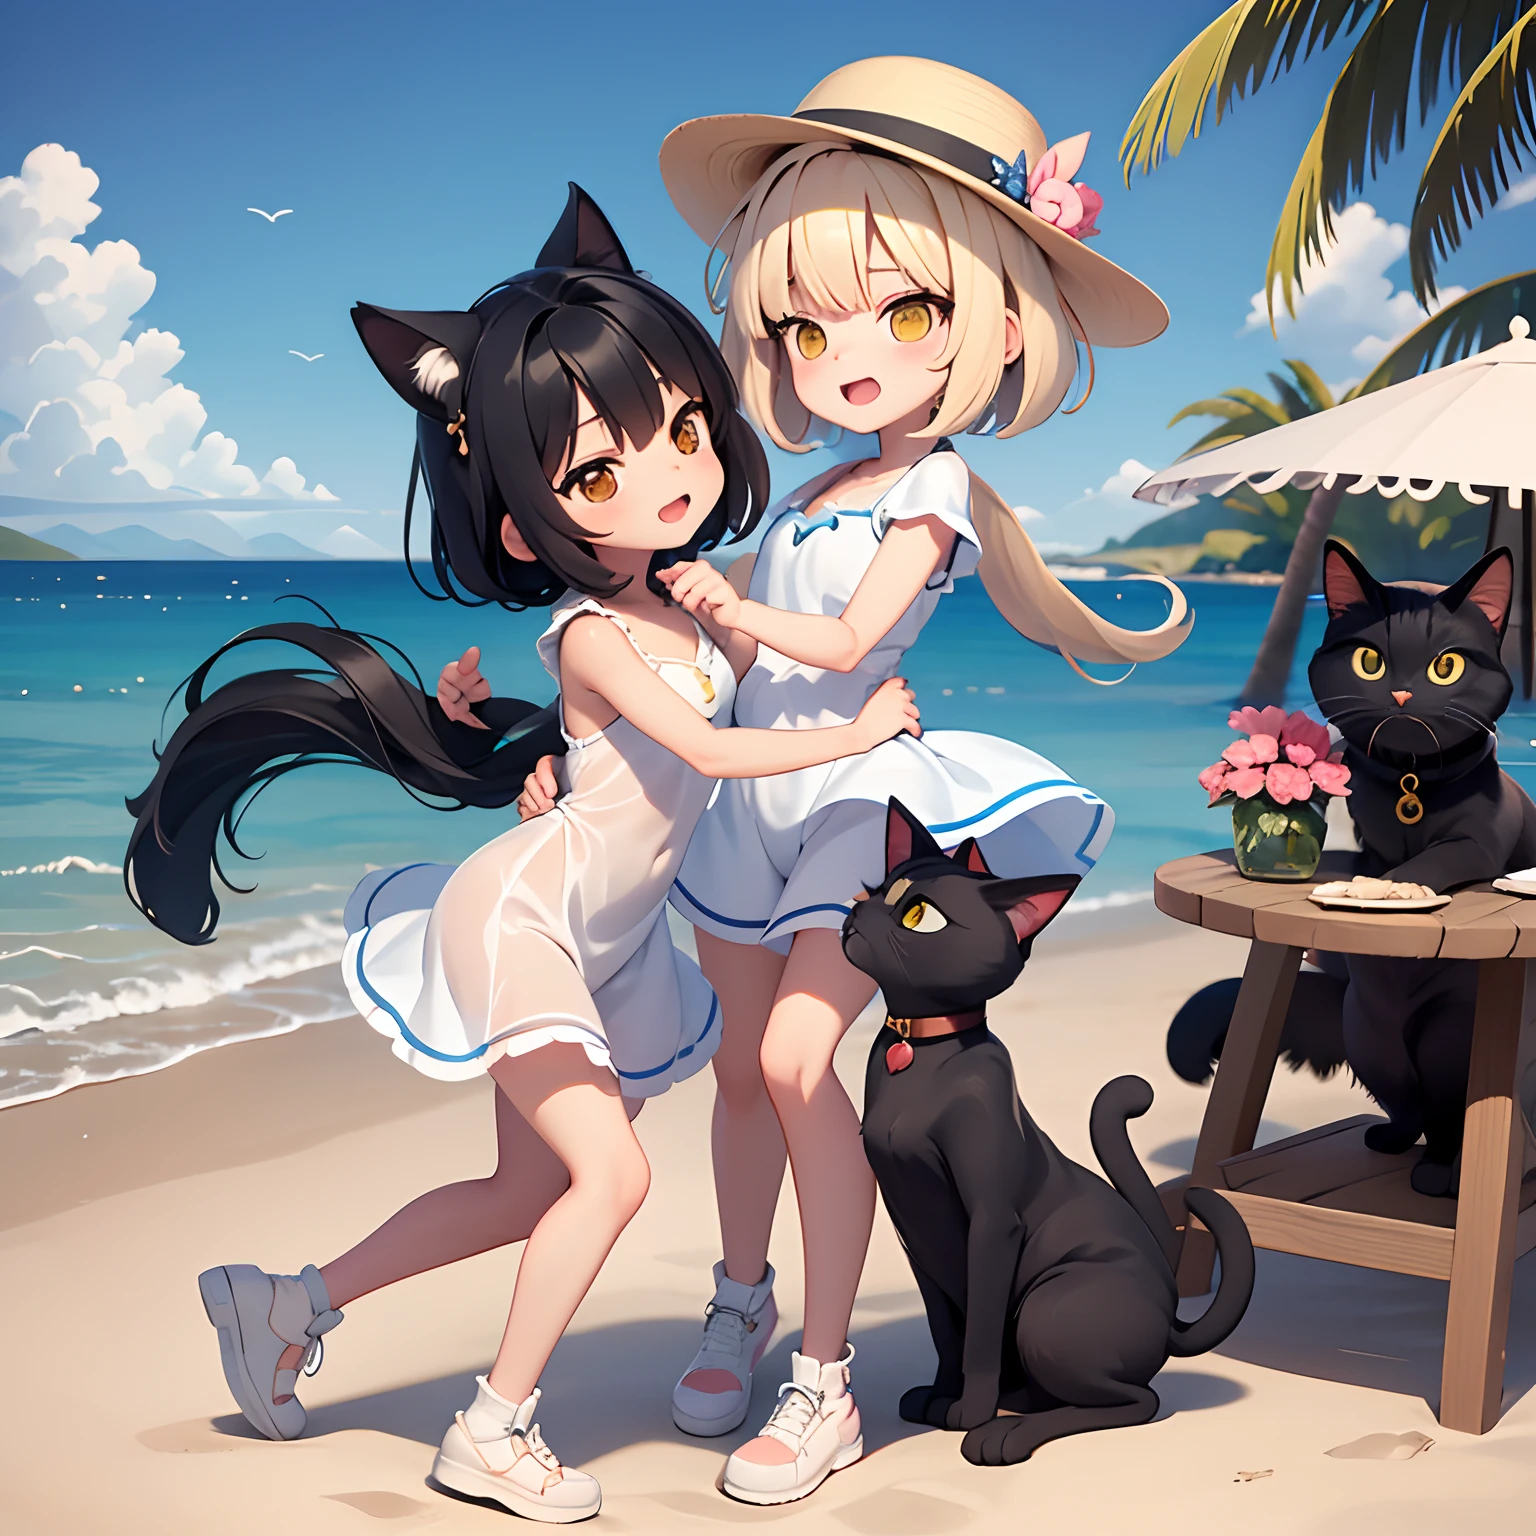 2女孩 , 1 隻三色貓, 1只黑猫, 女孩戴著白帽子在海灘上跳舞, 背景上的島嶼, 沙子上有這麼多貝殼